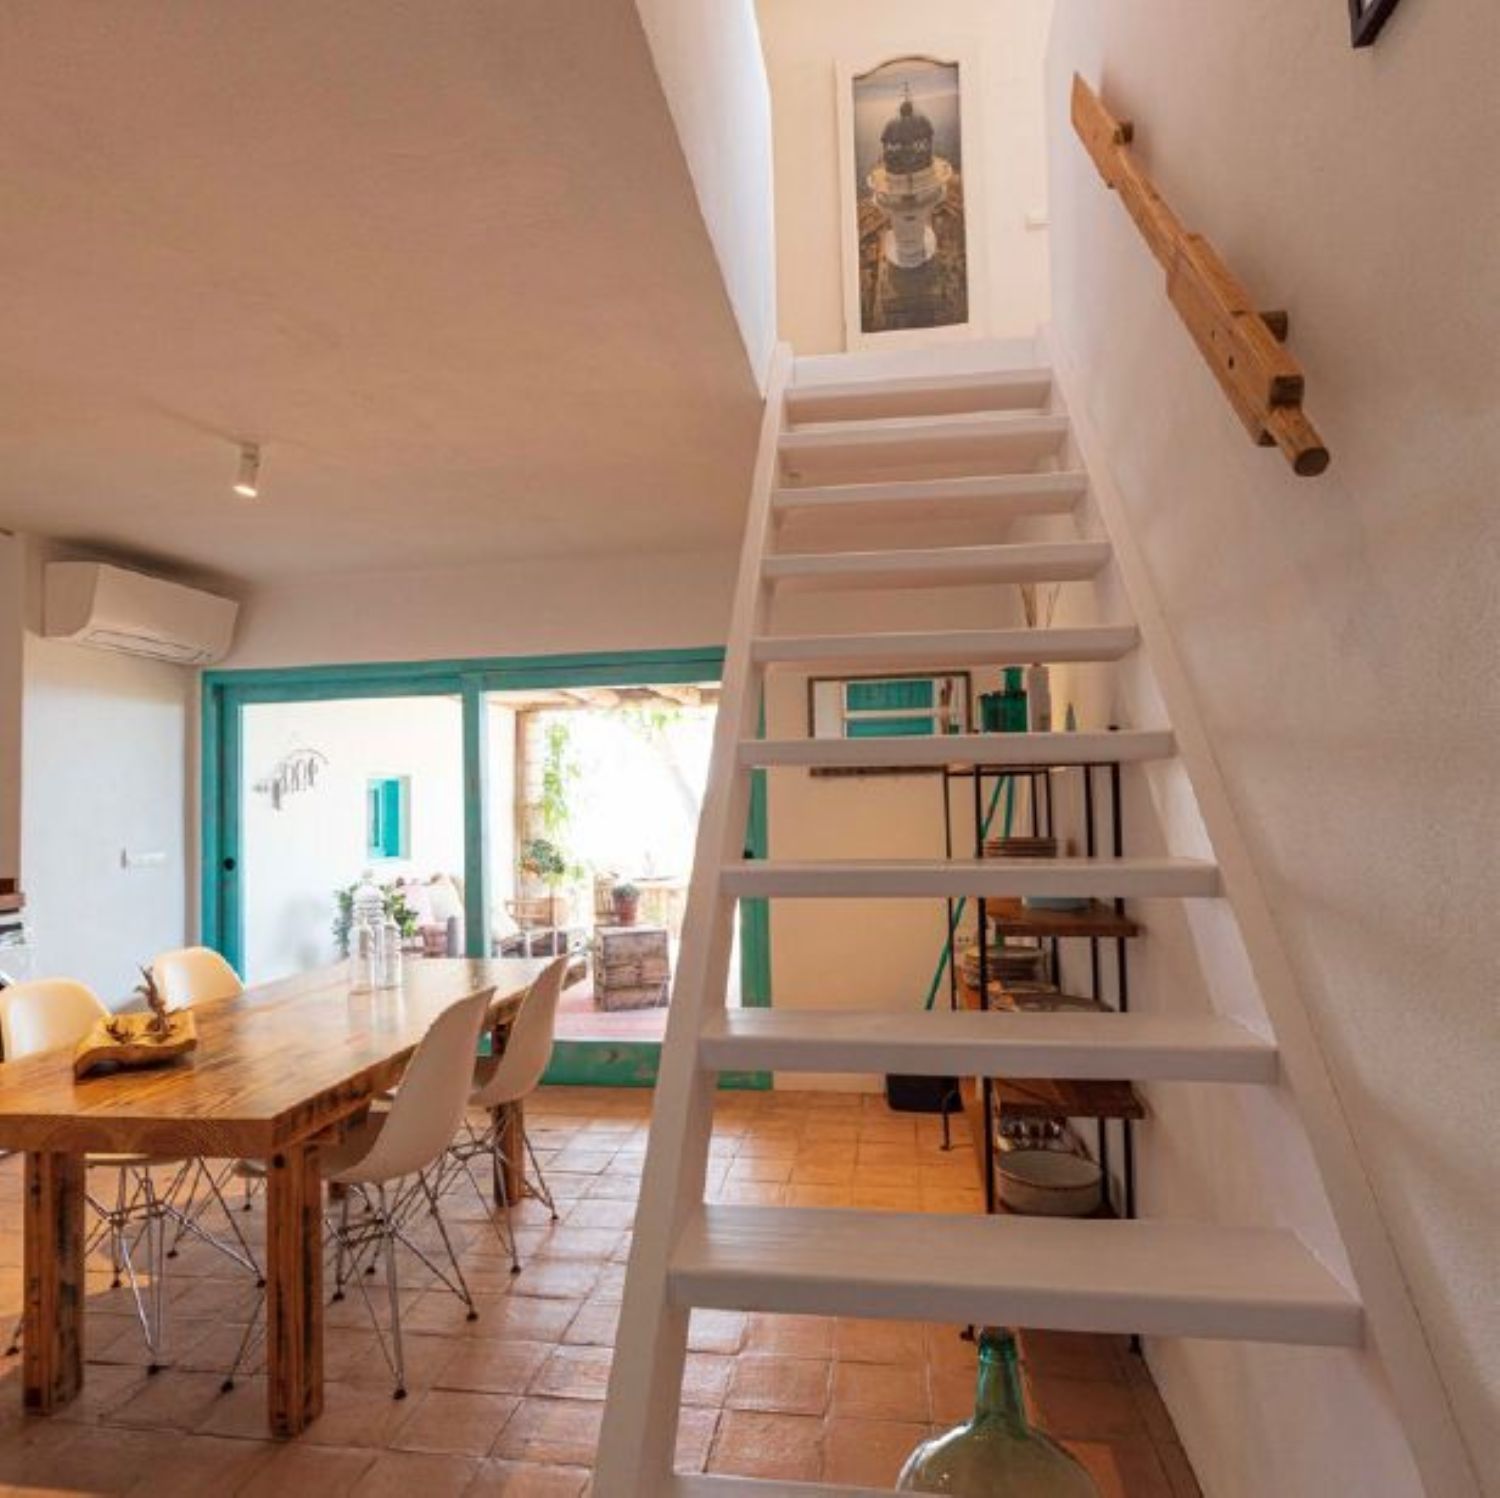 Casa en venta en primera línea de mar en el Pilar de la Mola, en Formentera